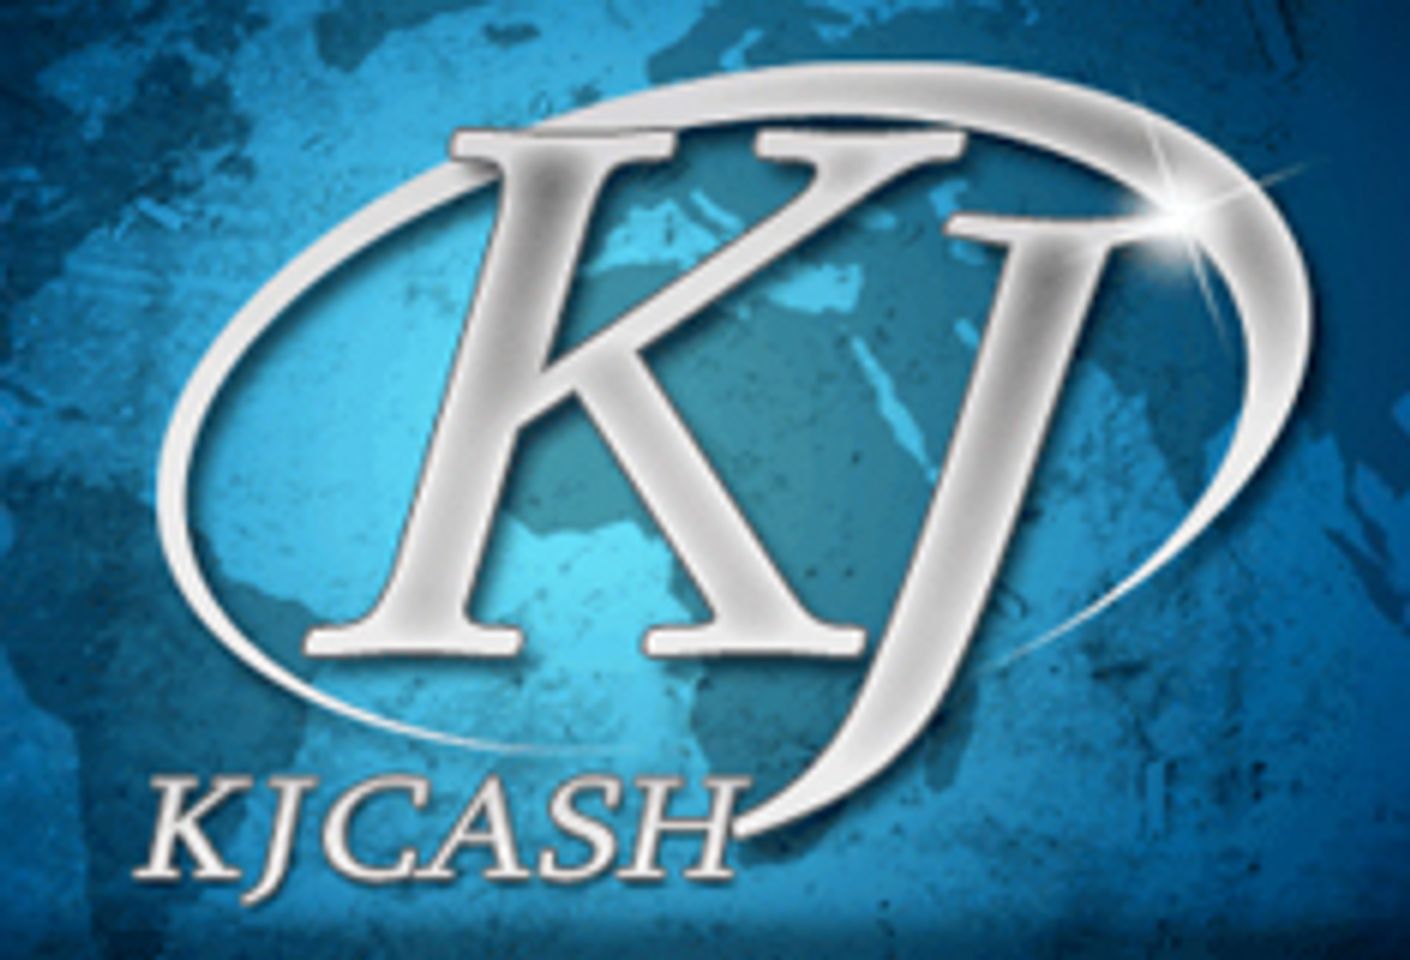 KJCash Announces Deal with TwinkPay.com Affiliate Program